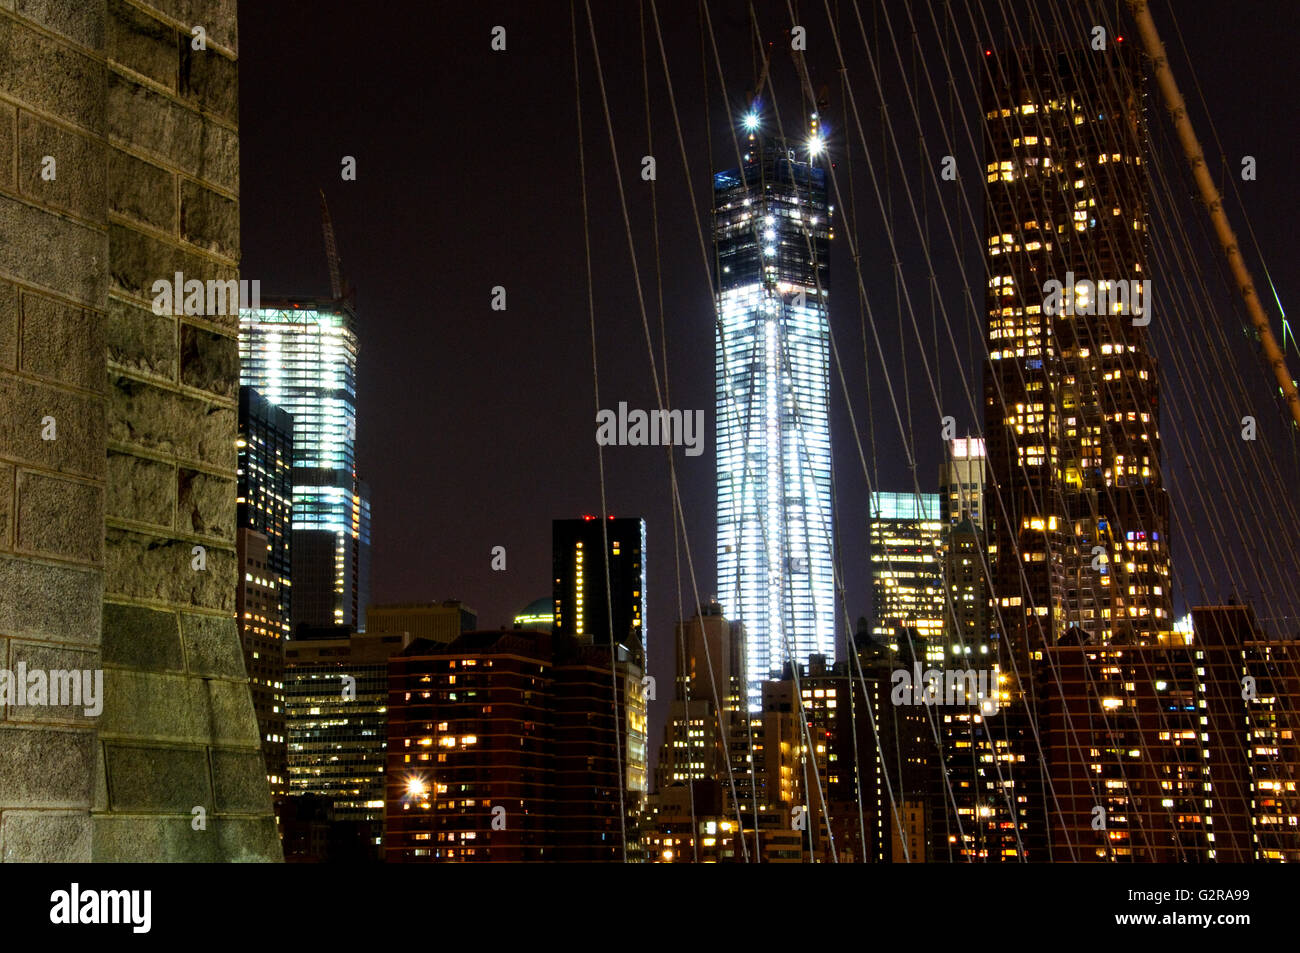 One World Trade Center, 1 WTC, Freedom Tower, Ground Zero, at night, Manhattan, New York City, New York, United States Stock Photo